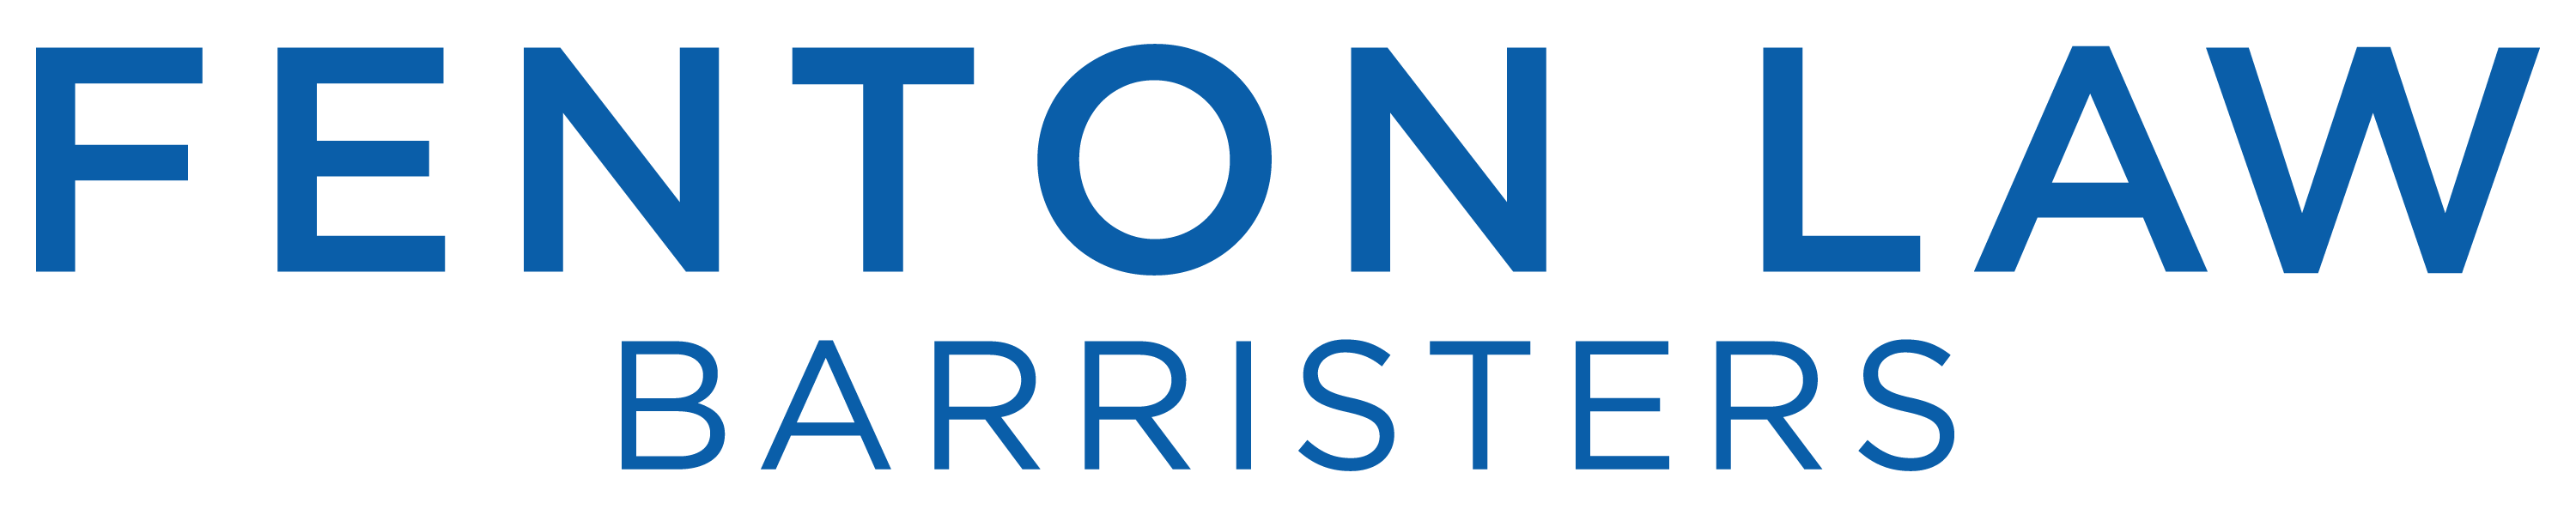 Fenton Law Barristers Logo